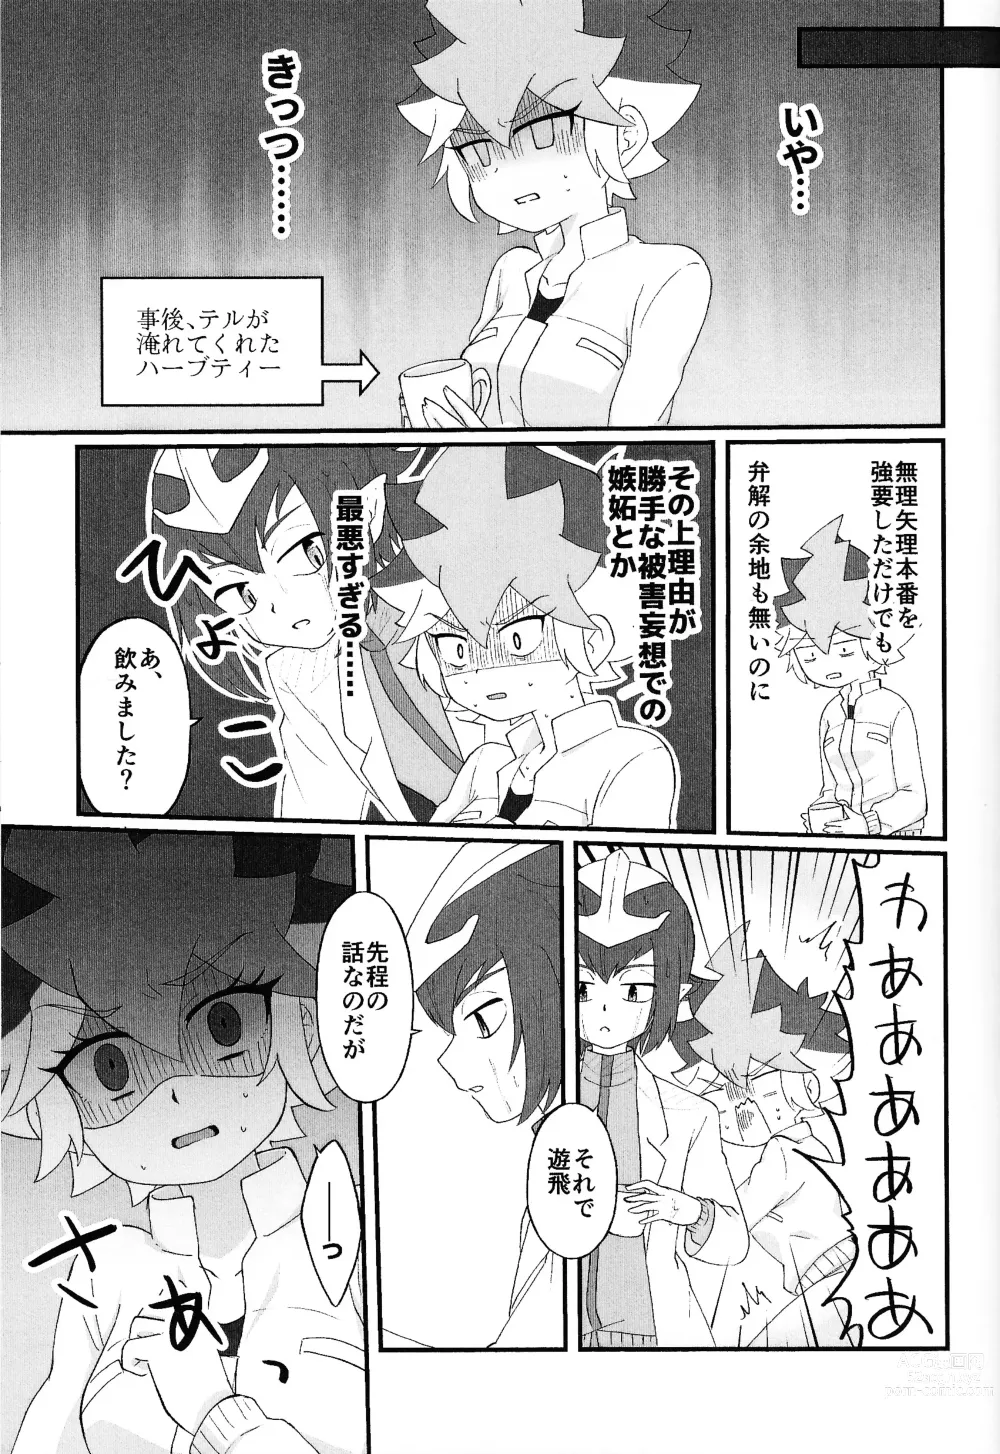 Page 38 of doujinshi Pandoranohako ka kindan no kajitsu ka